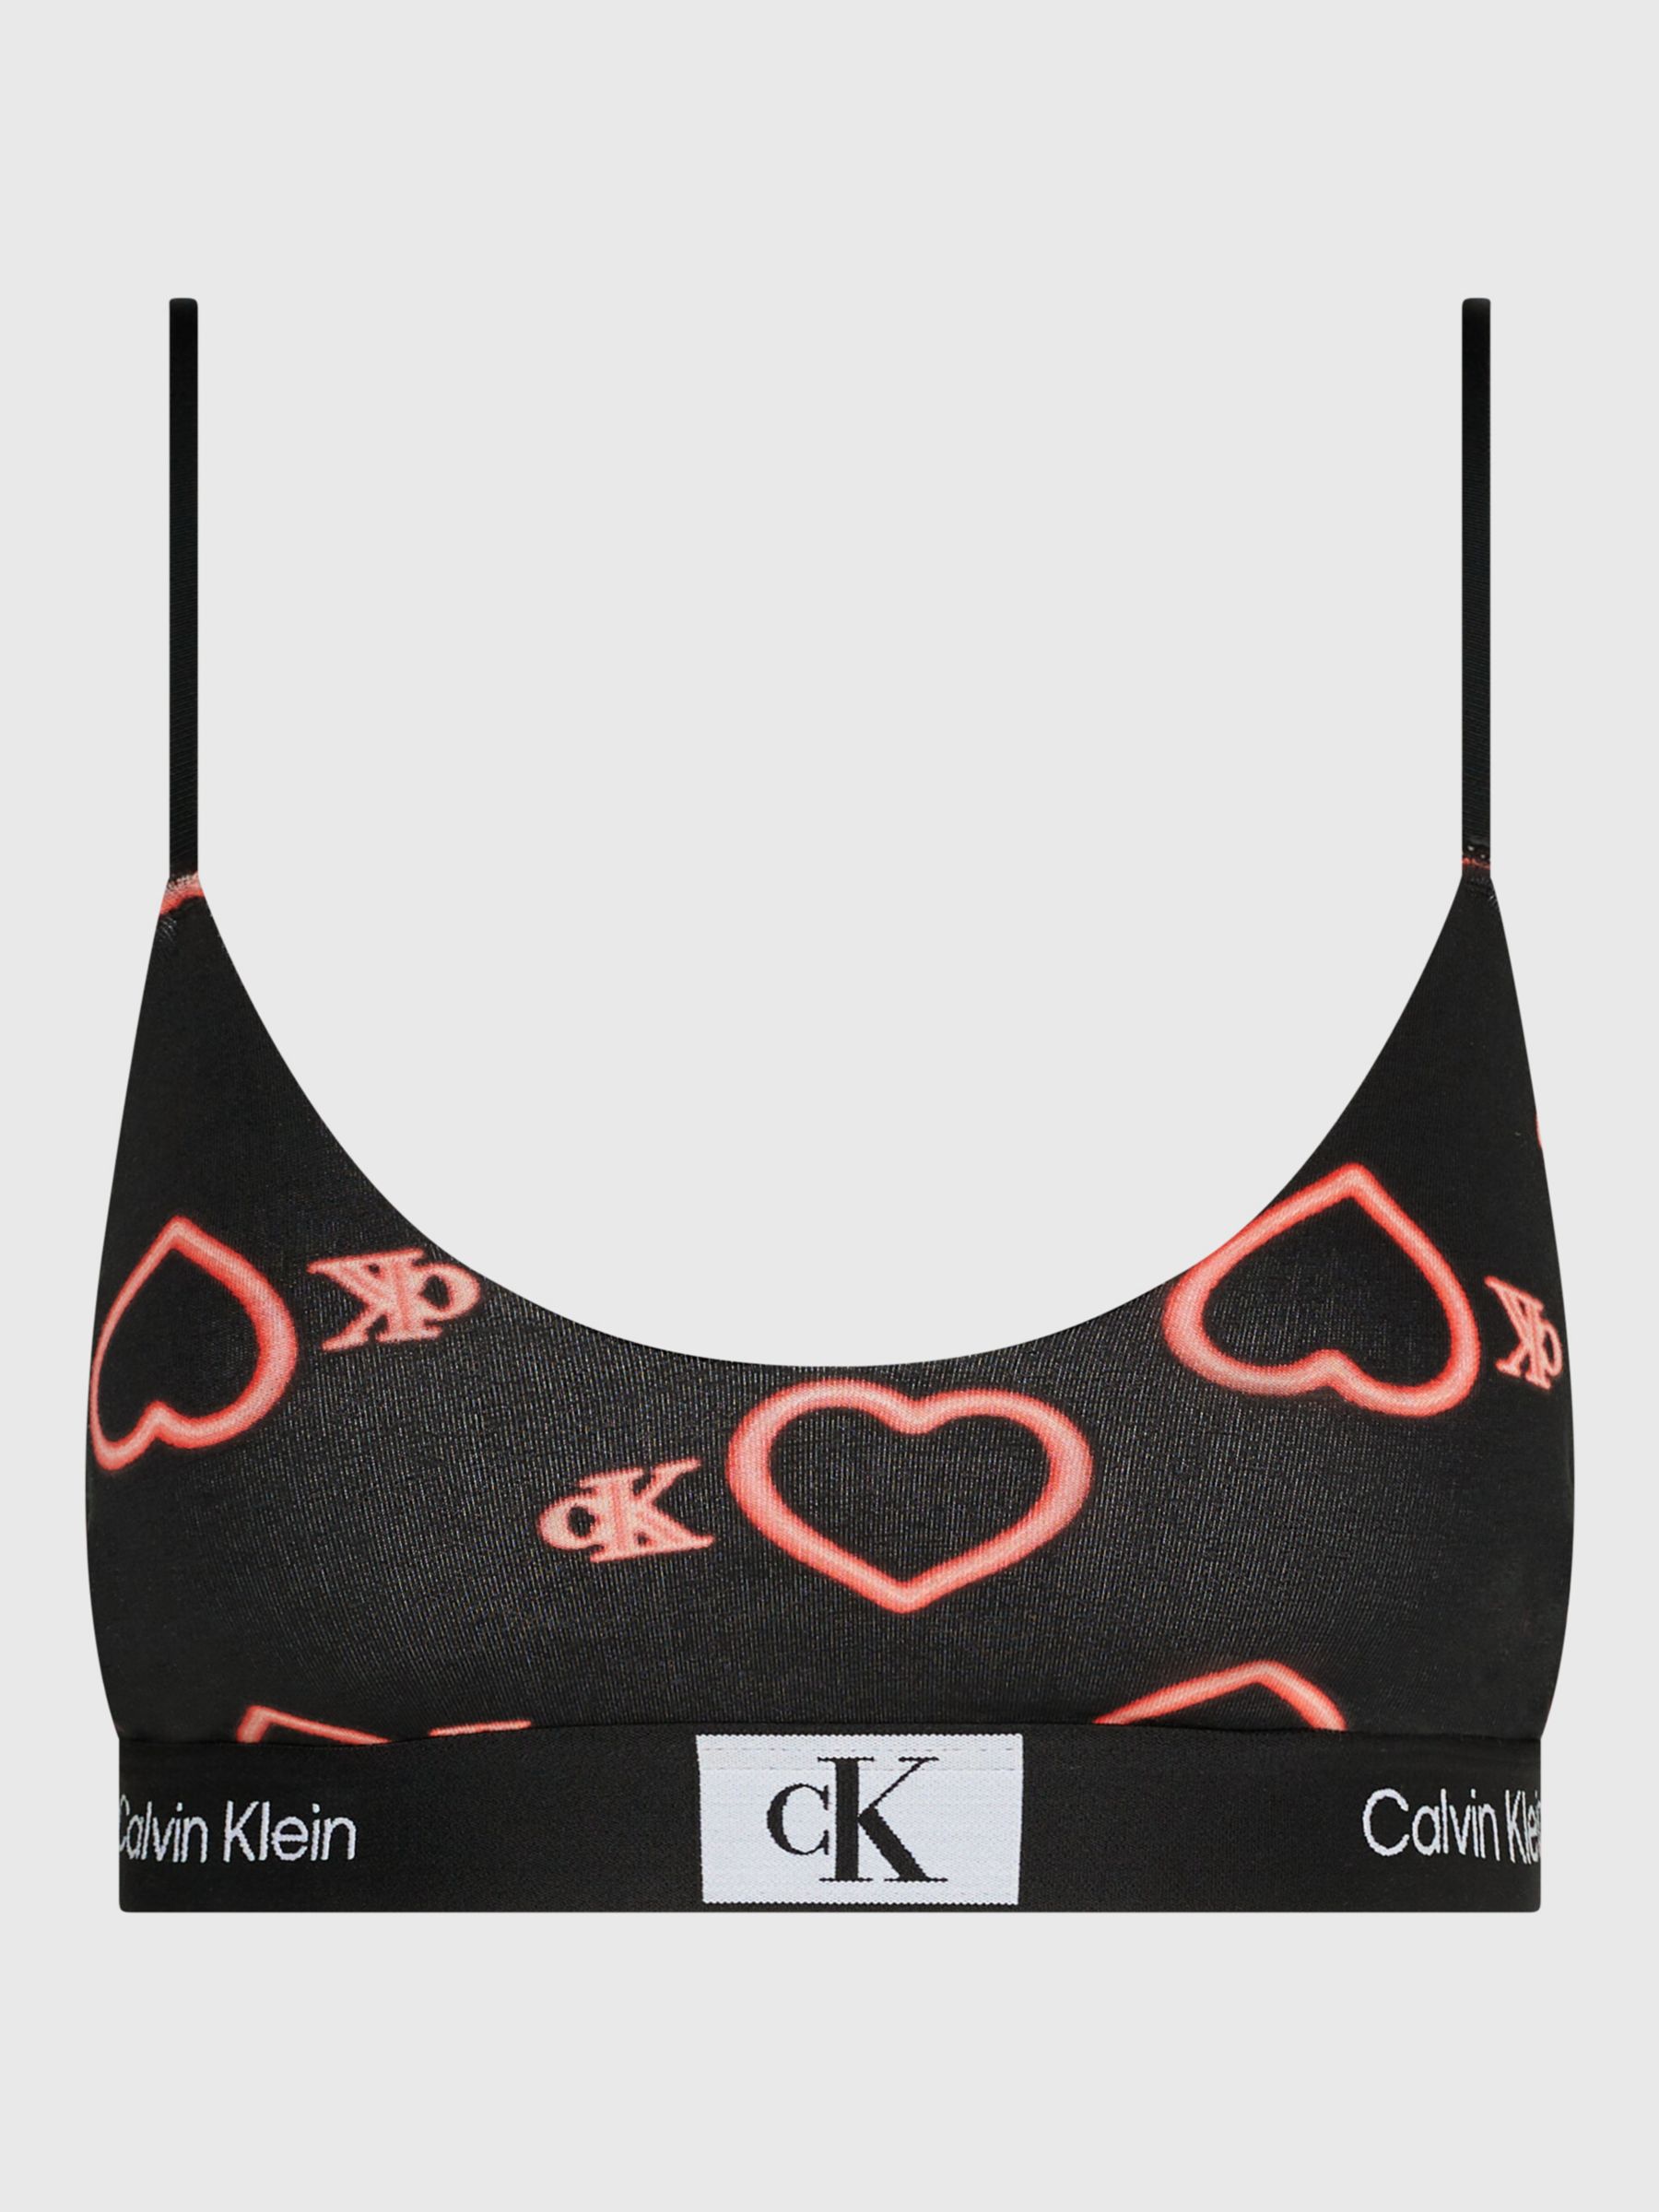 Calvin Klein Girls Bralette Bikini Set Pink Heart - Kids Life Clothing -  Children's designer clothing